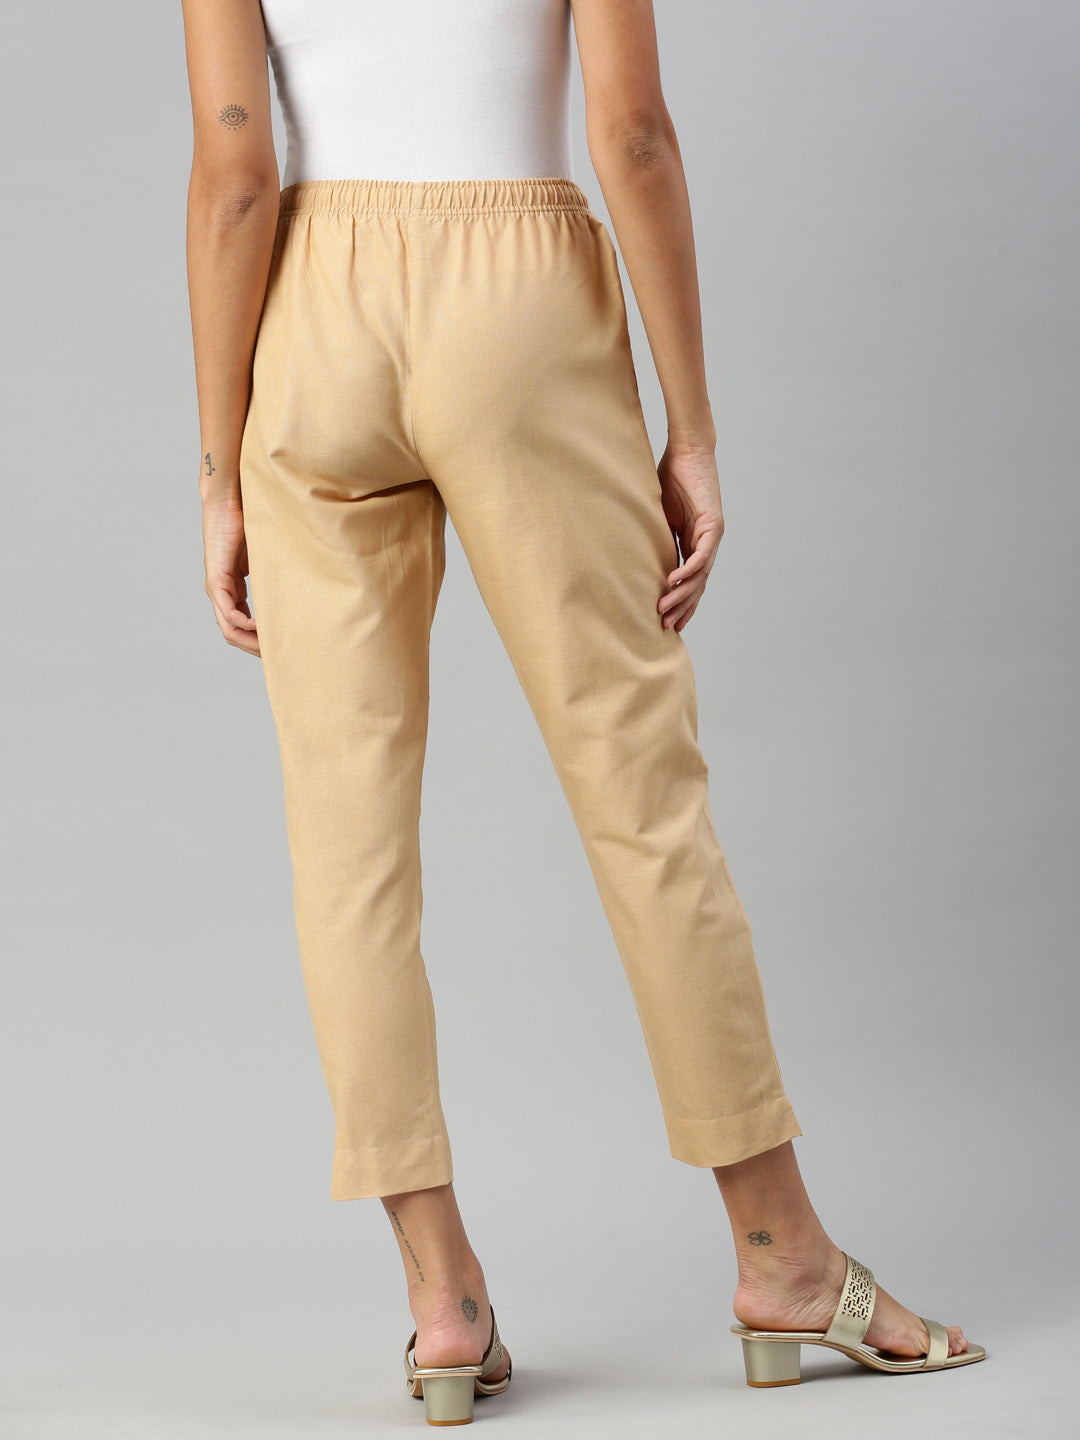 Women Straight Fit Cotton Pants/Kurti Pants/Palazzo Pants/Trousers Combo -  Black & Off-White